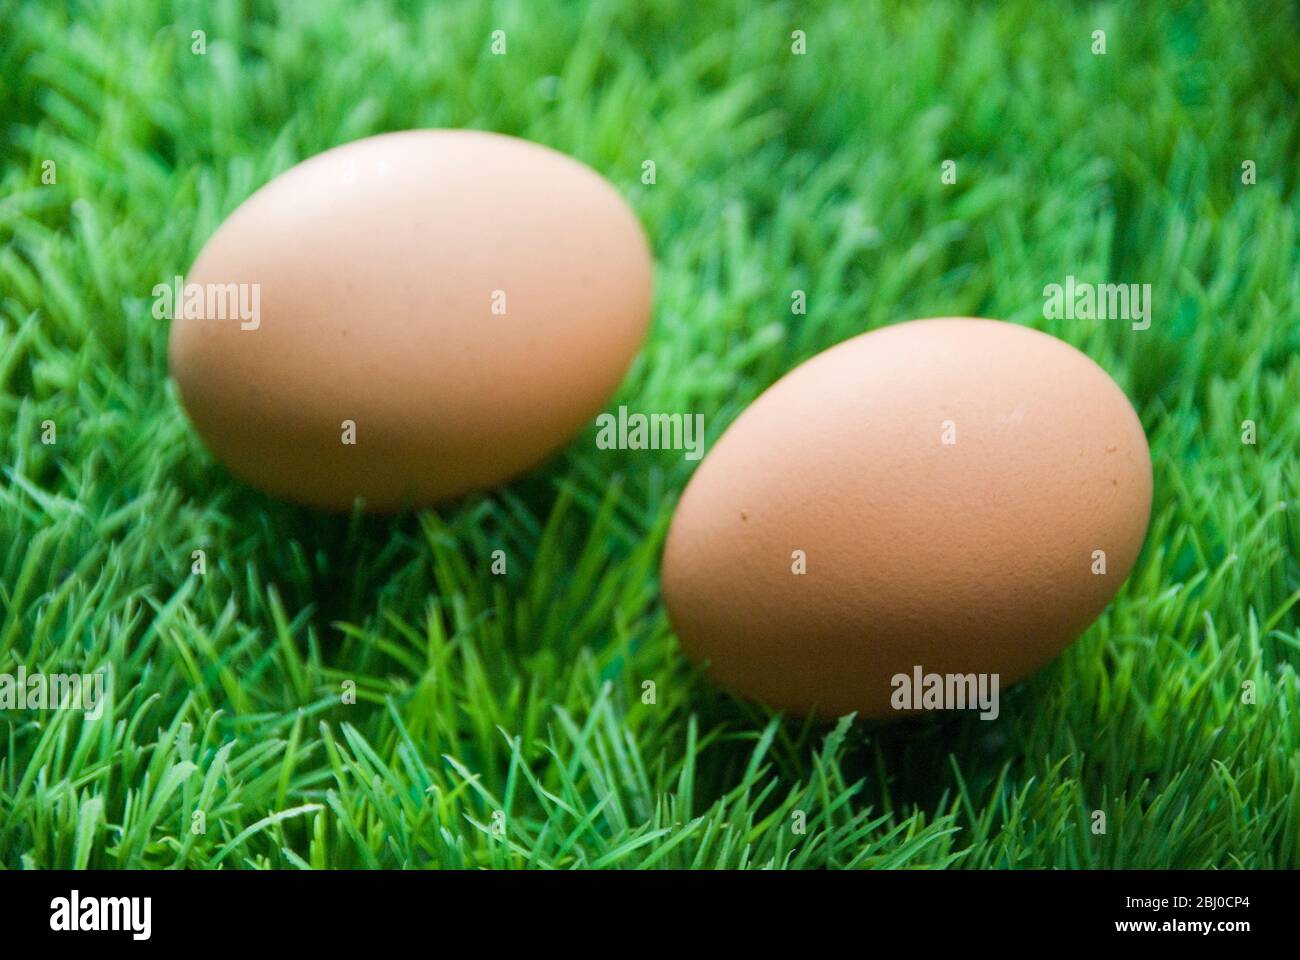 Zwei braune Eier auf gefälschtem grünem Plastikgras - Stockfoto